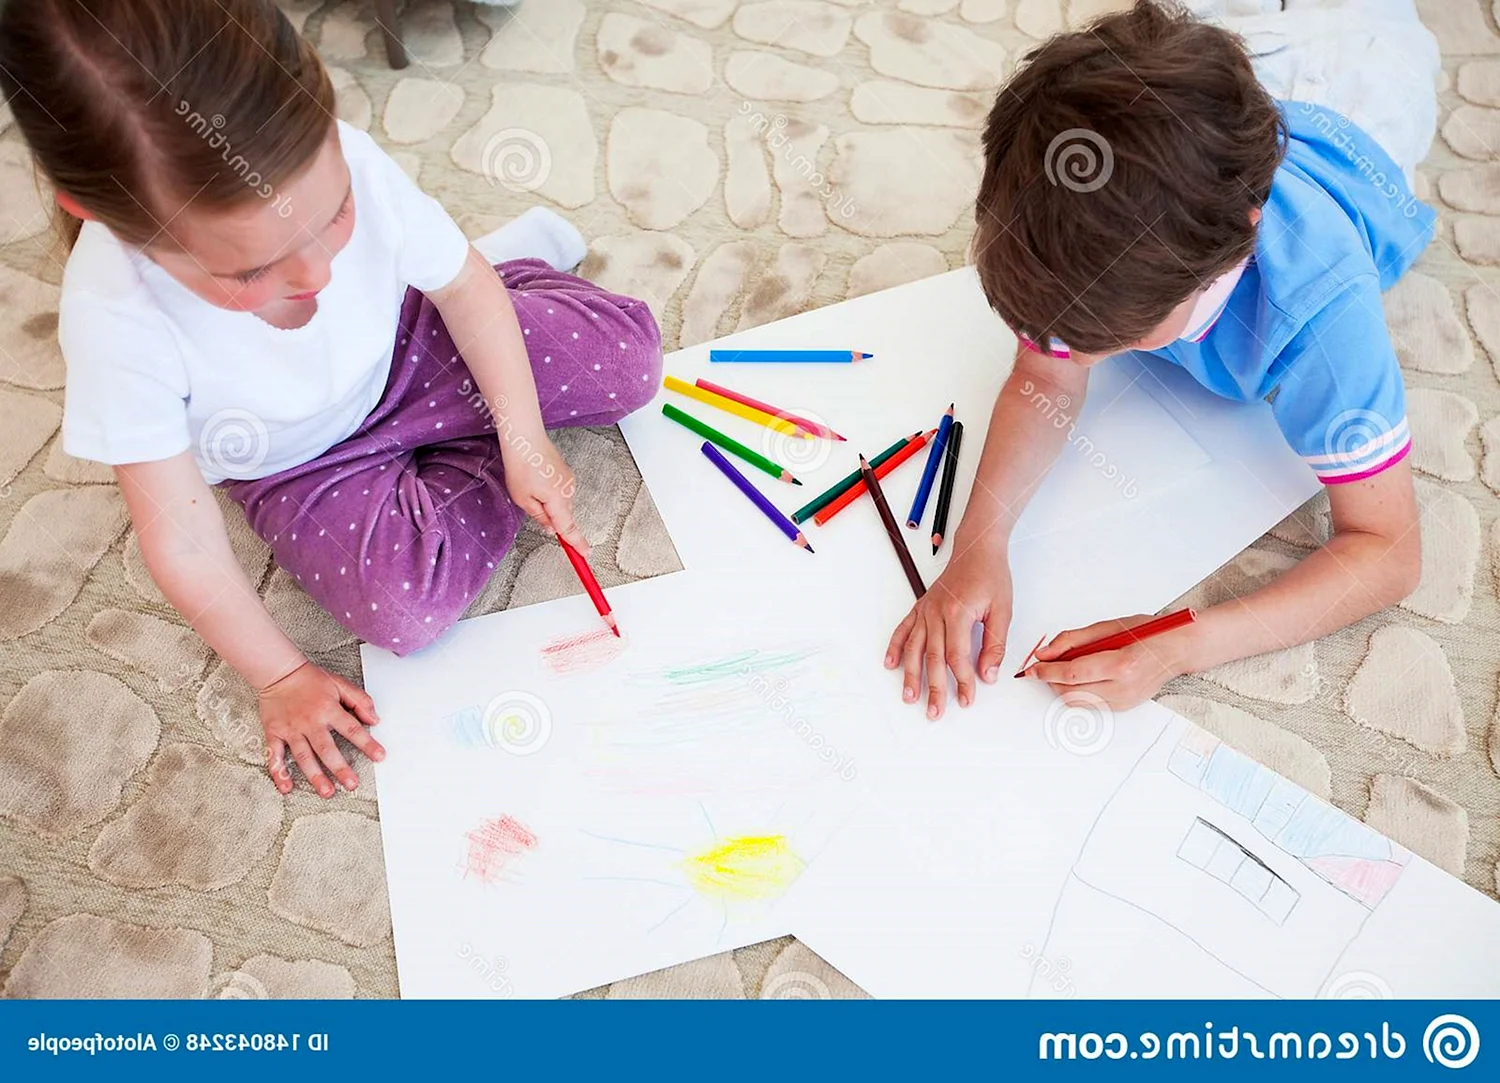 Рисунок как дети списывают